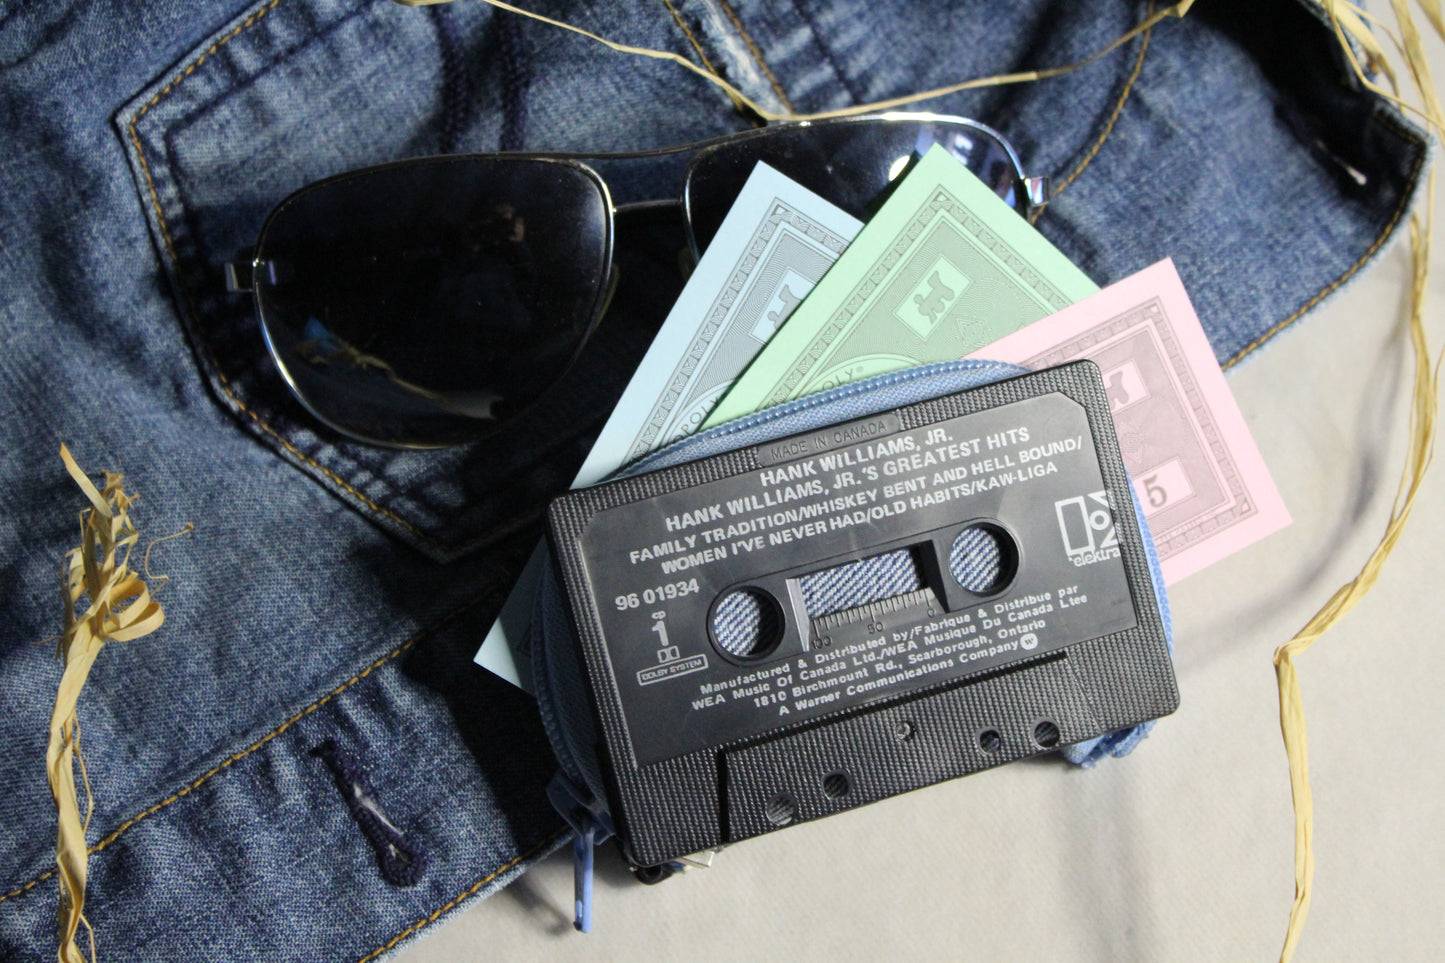 Cassette Wallet - Hank Williams Jr.'s Greatest